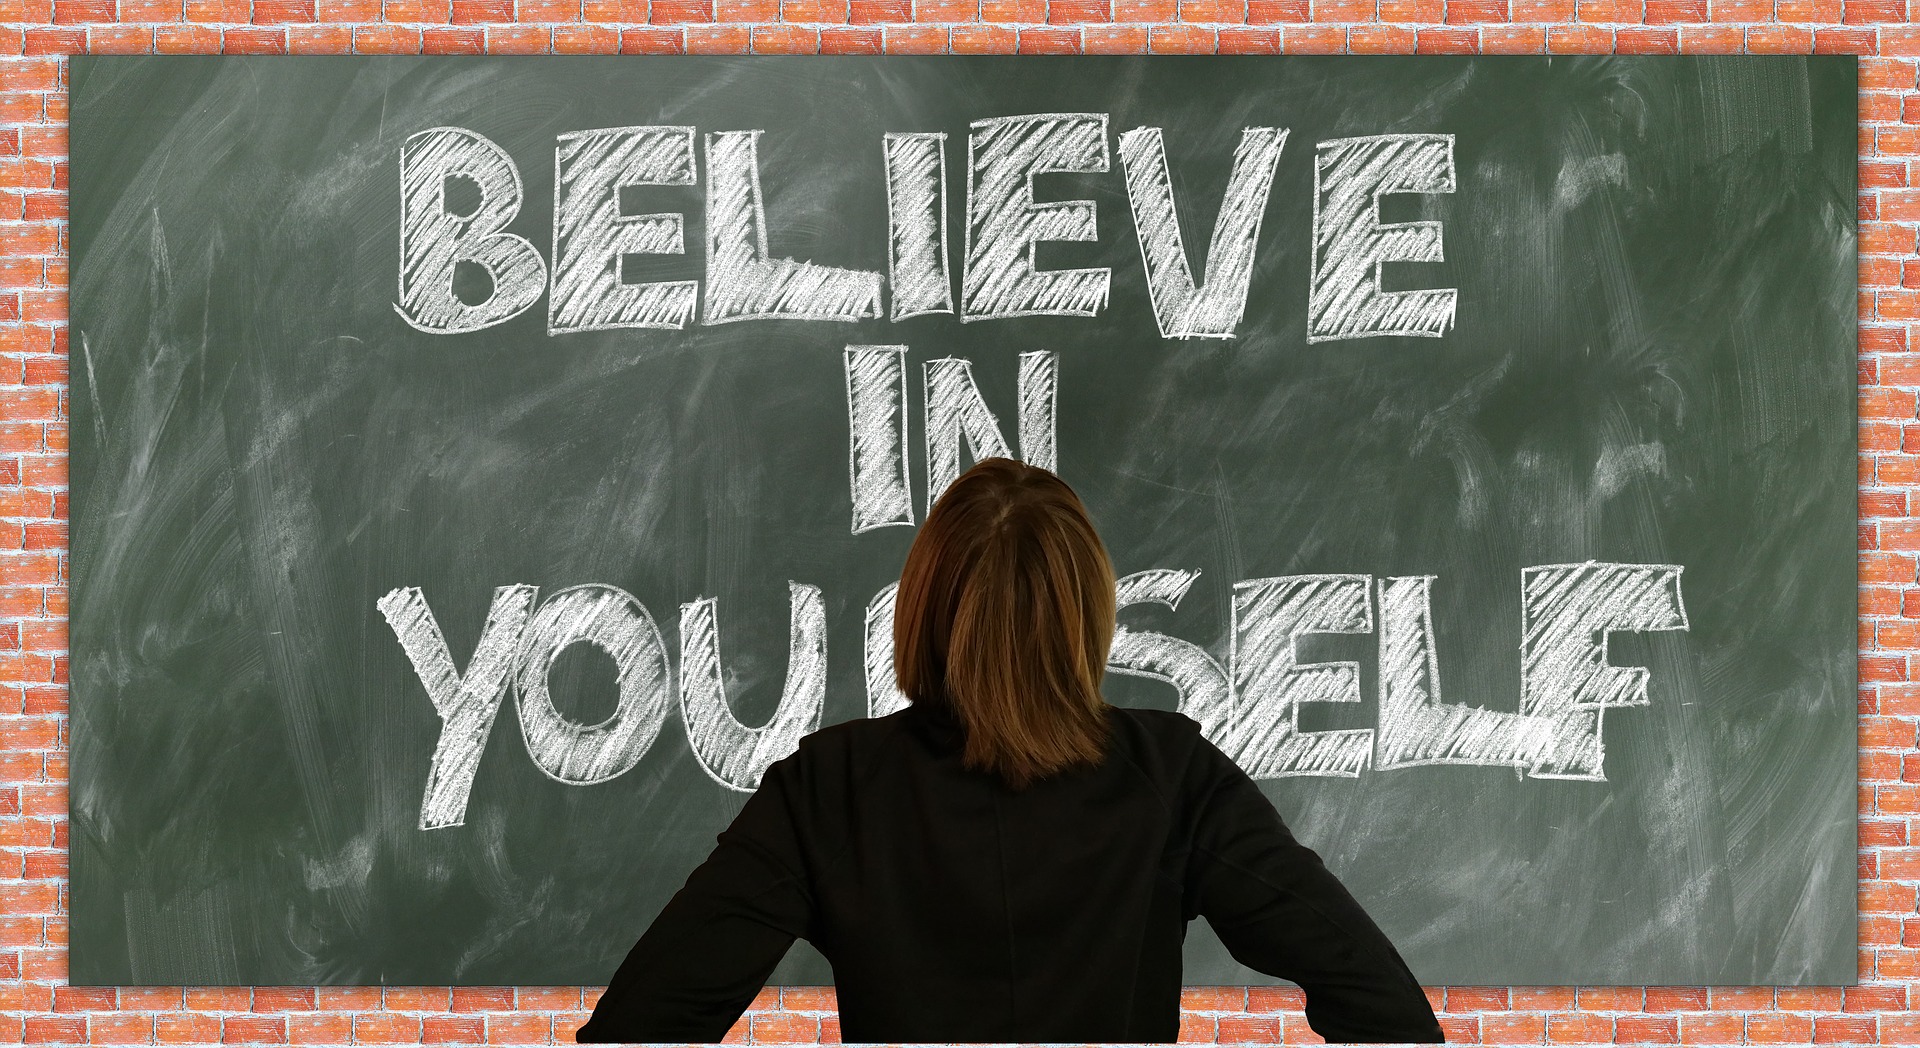 believe in yourself, positive behavior creates change